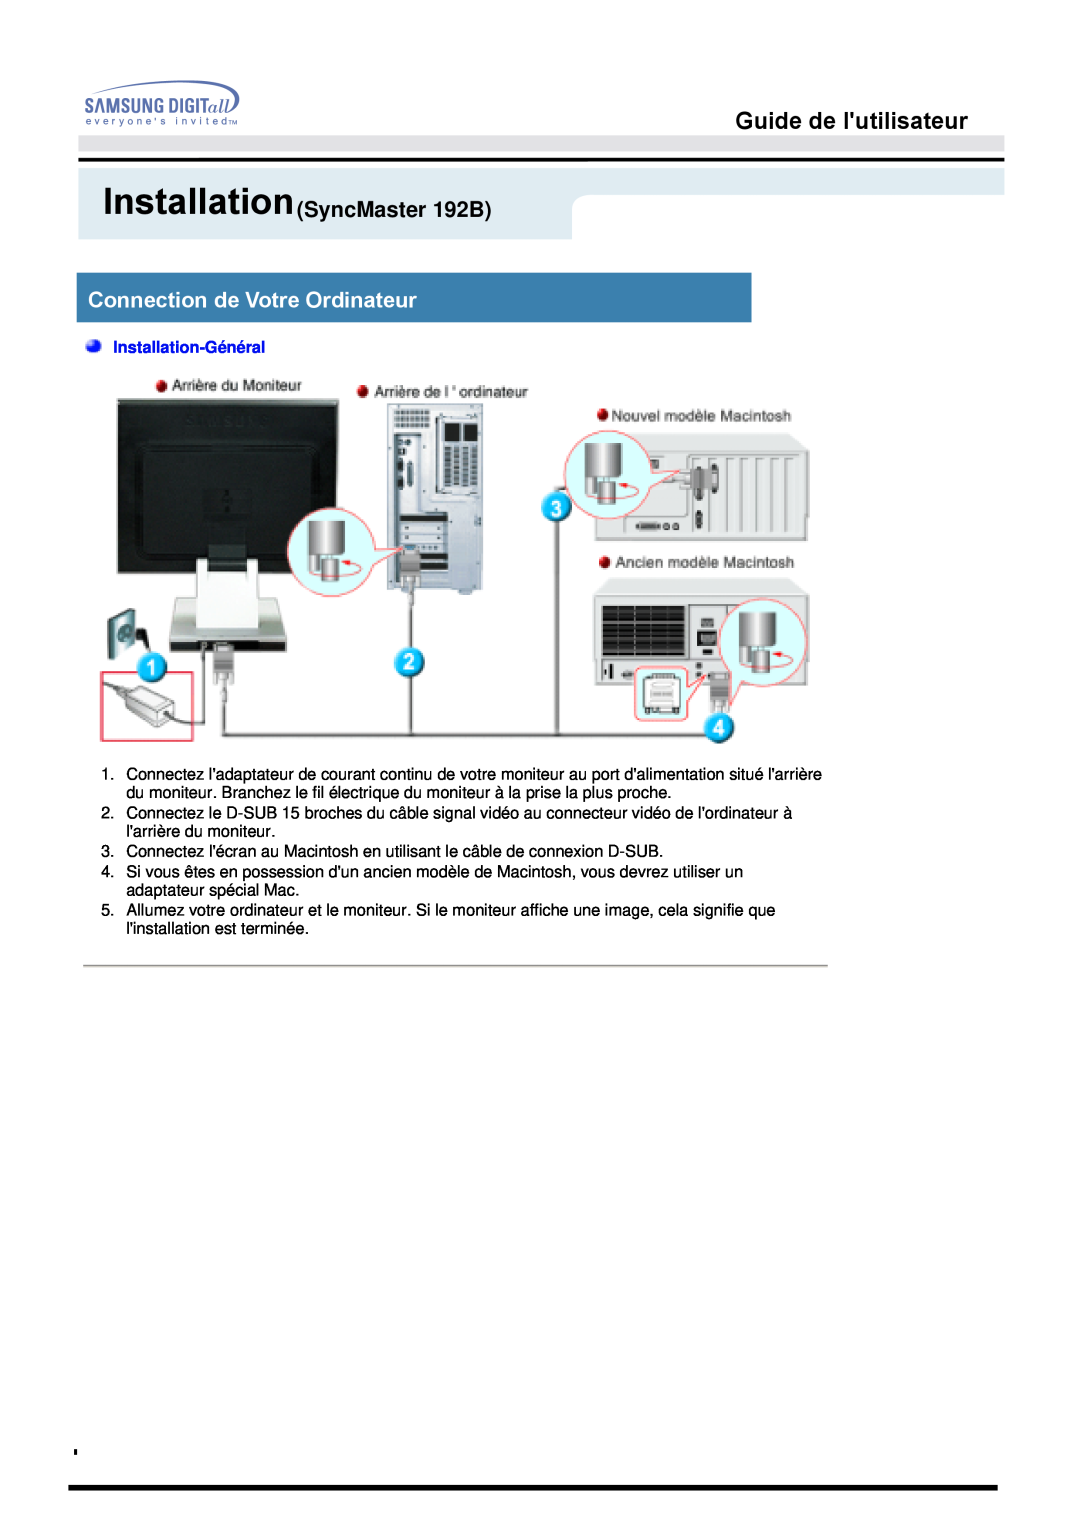 Samsung MO19ESZS InstallationSyncMaster 192B, Connection de Votre Ordinateur, Guide de lutilisateur, Installation-Général 